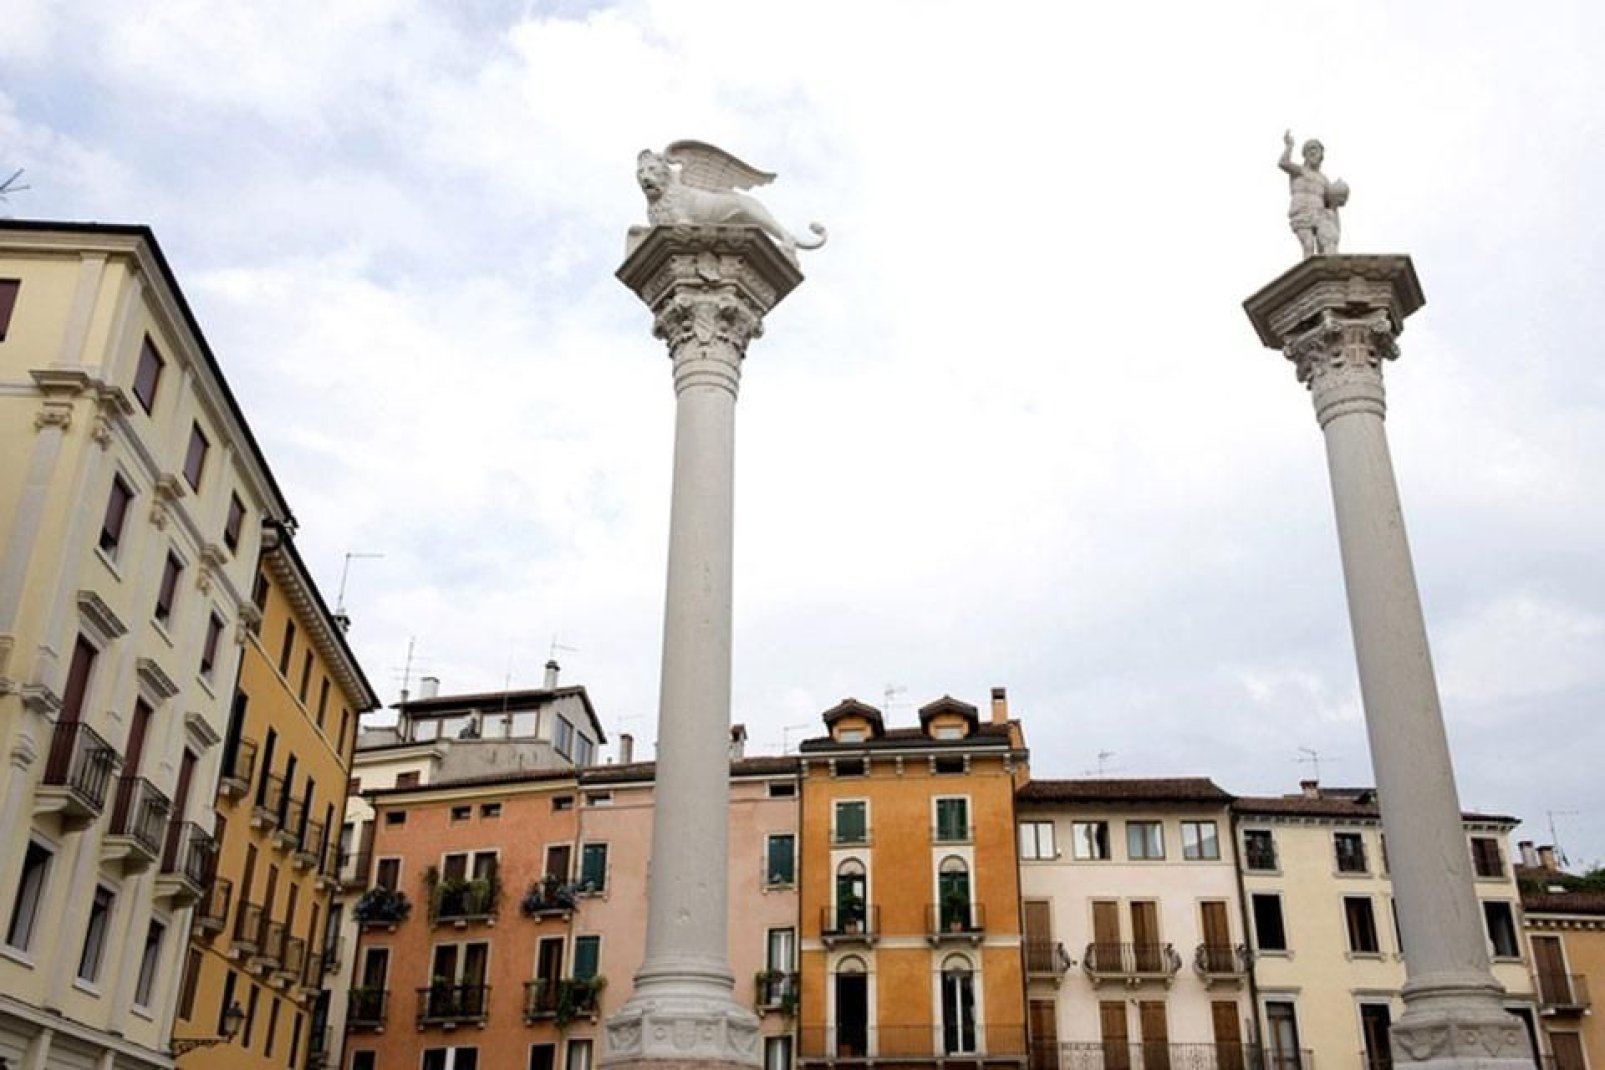 Particolare di Piazza dei Signori a Vicenza, dove svettano due colonne, una con il Leone di San Marco, una con il Redentore